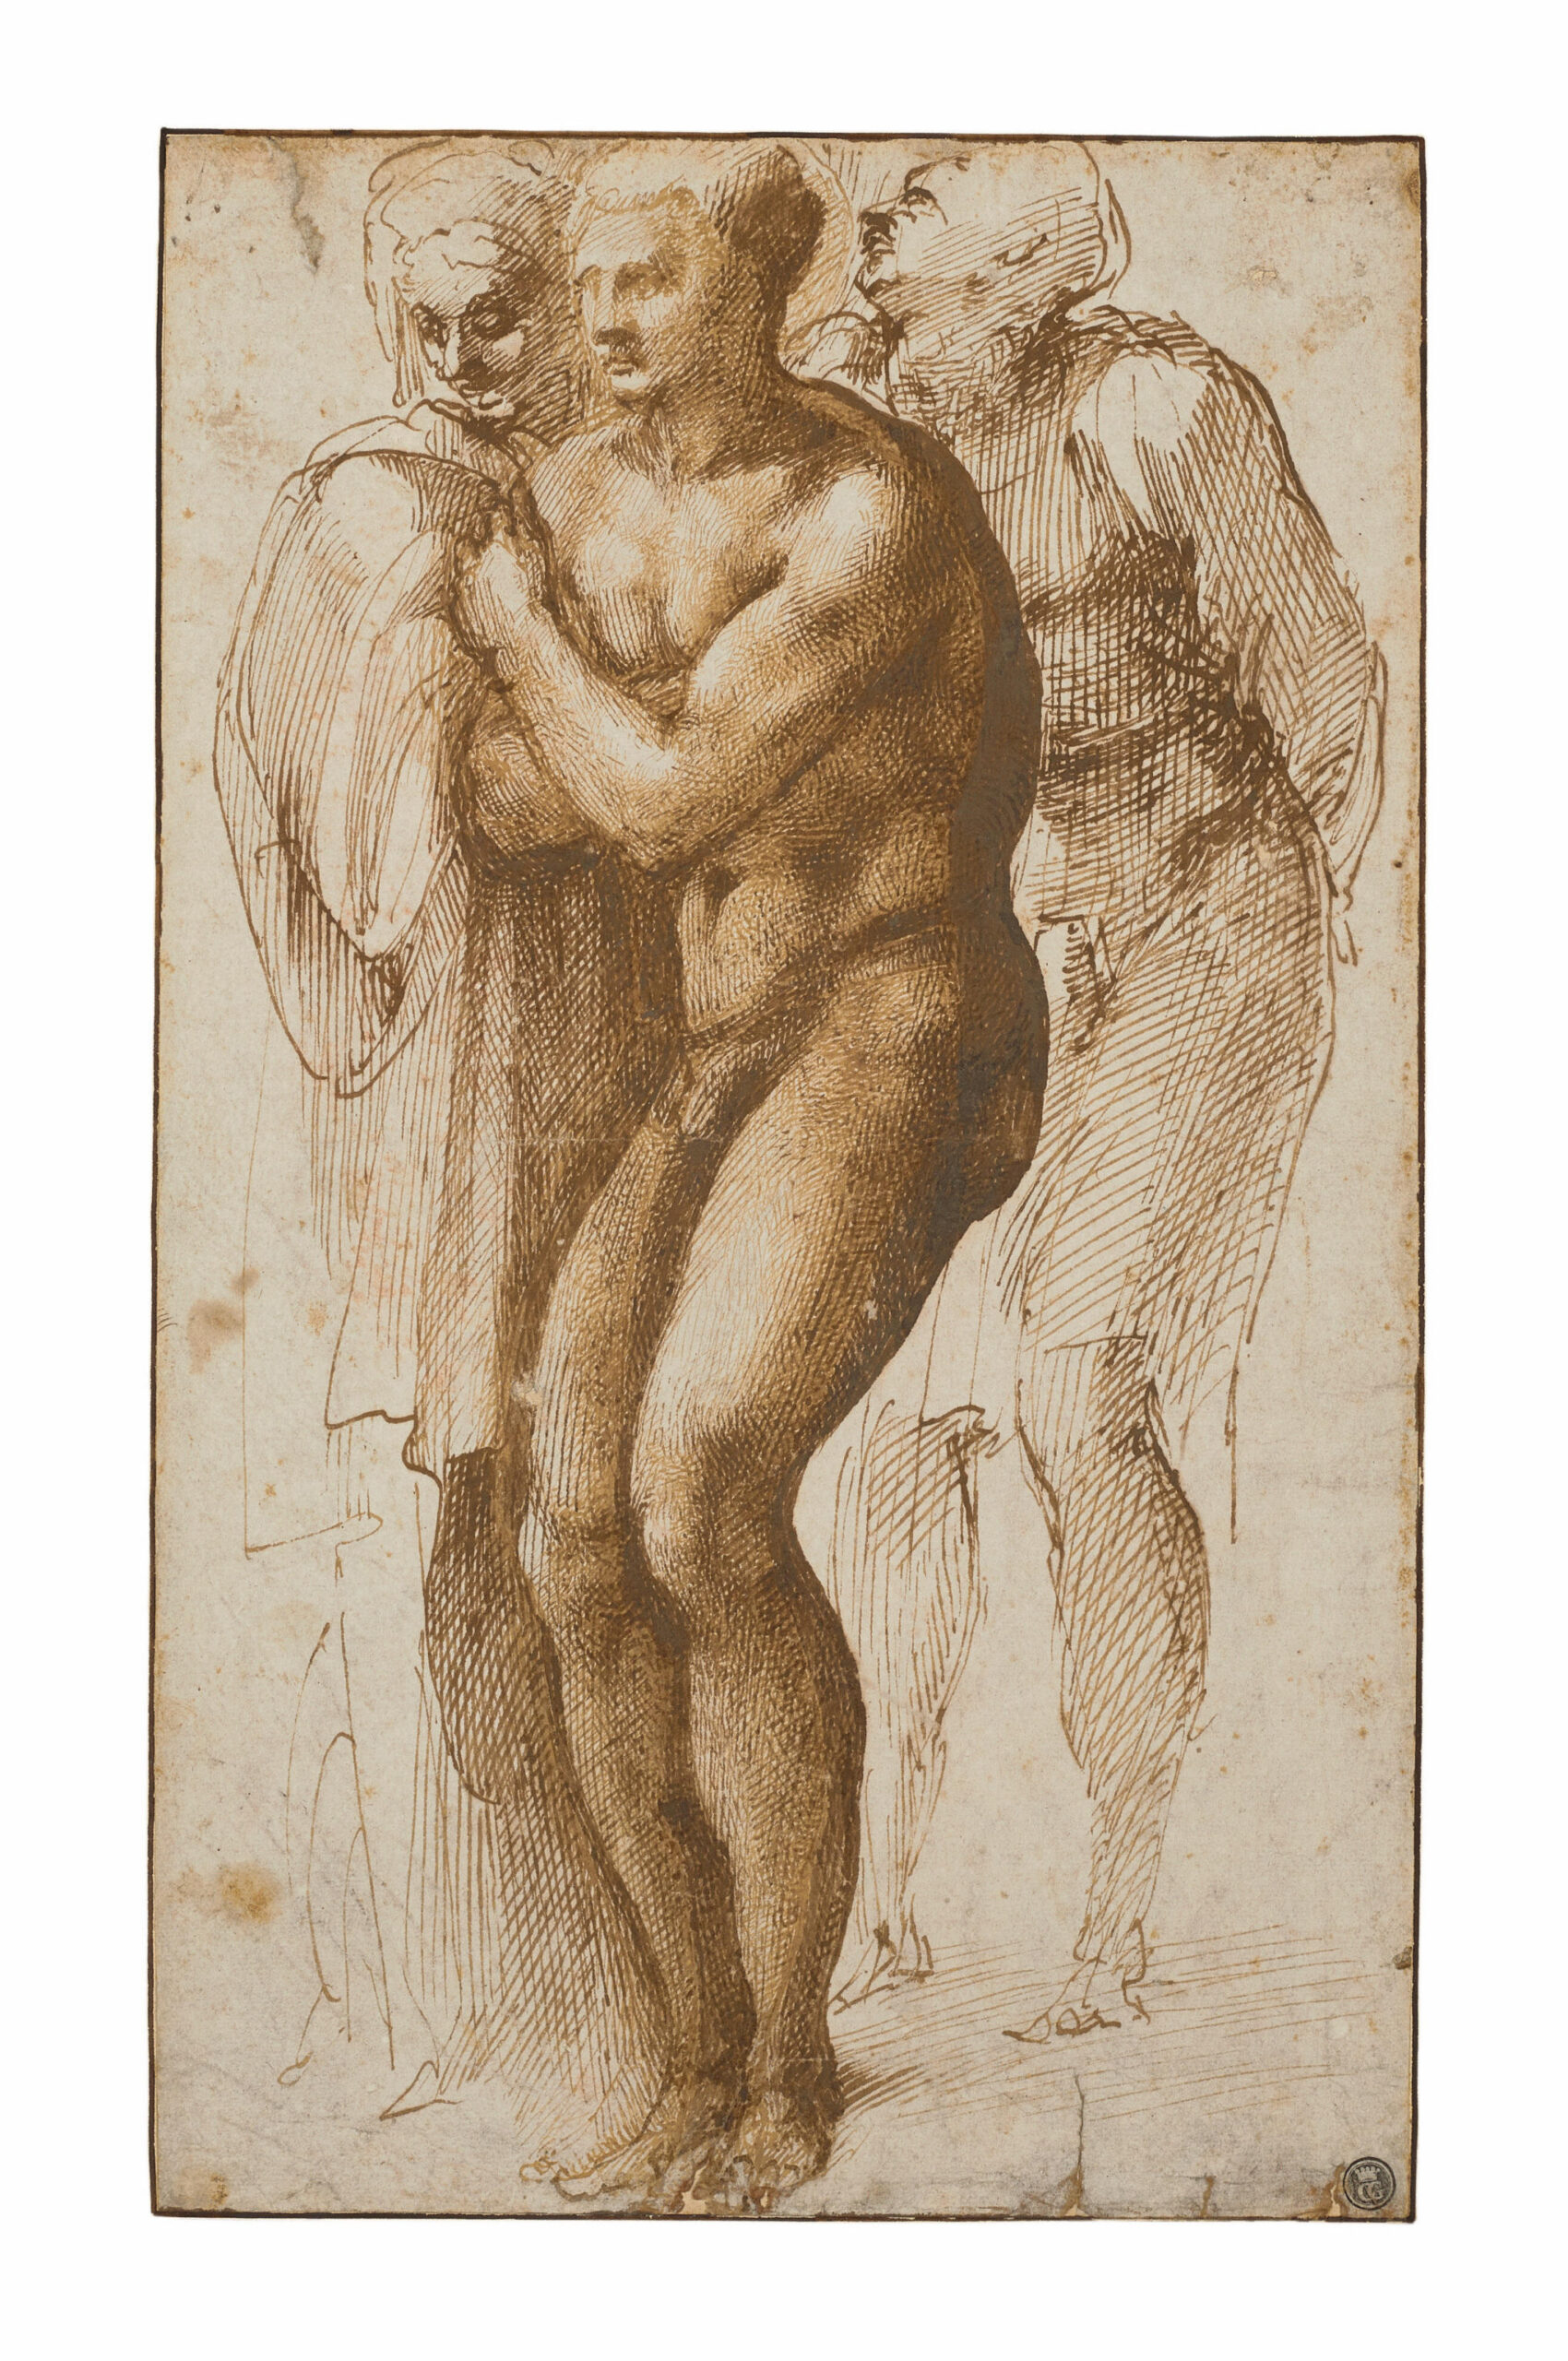 Aste celebri, raro disegno di Michelangelo in vendita da Christie’s